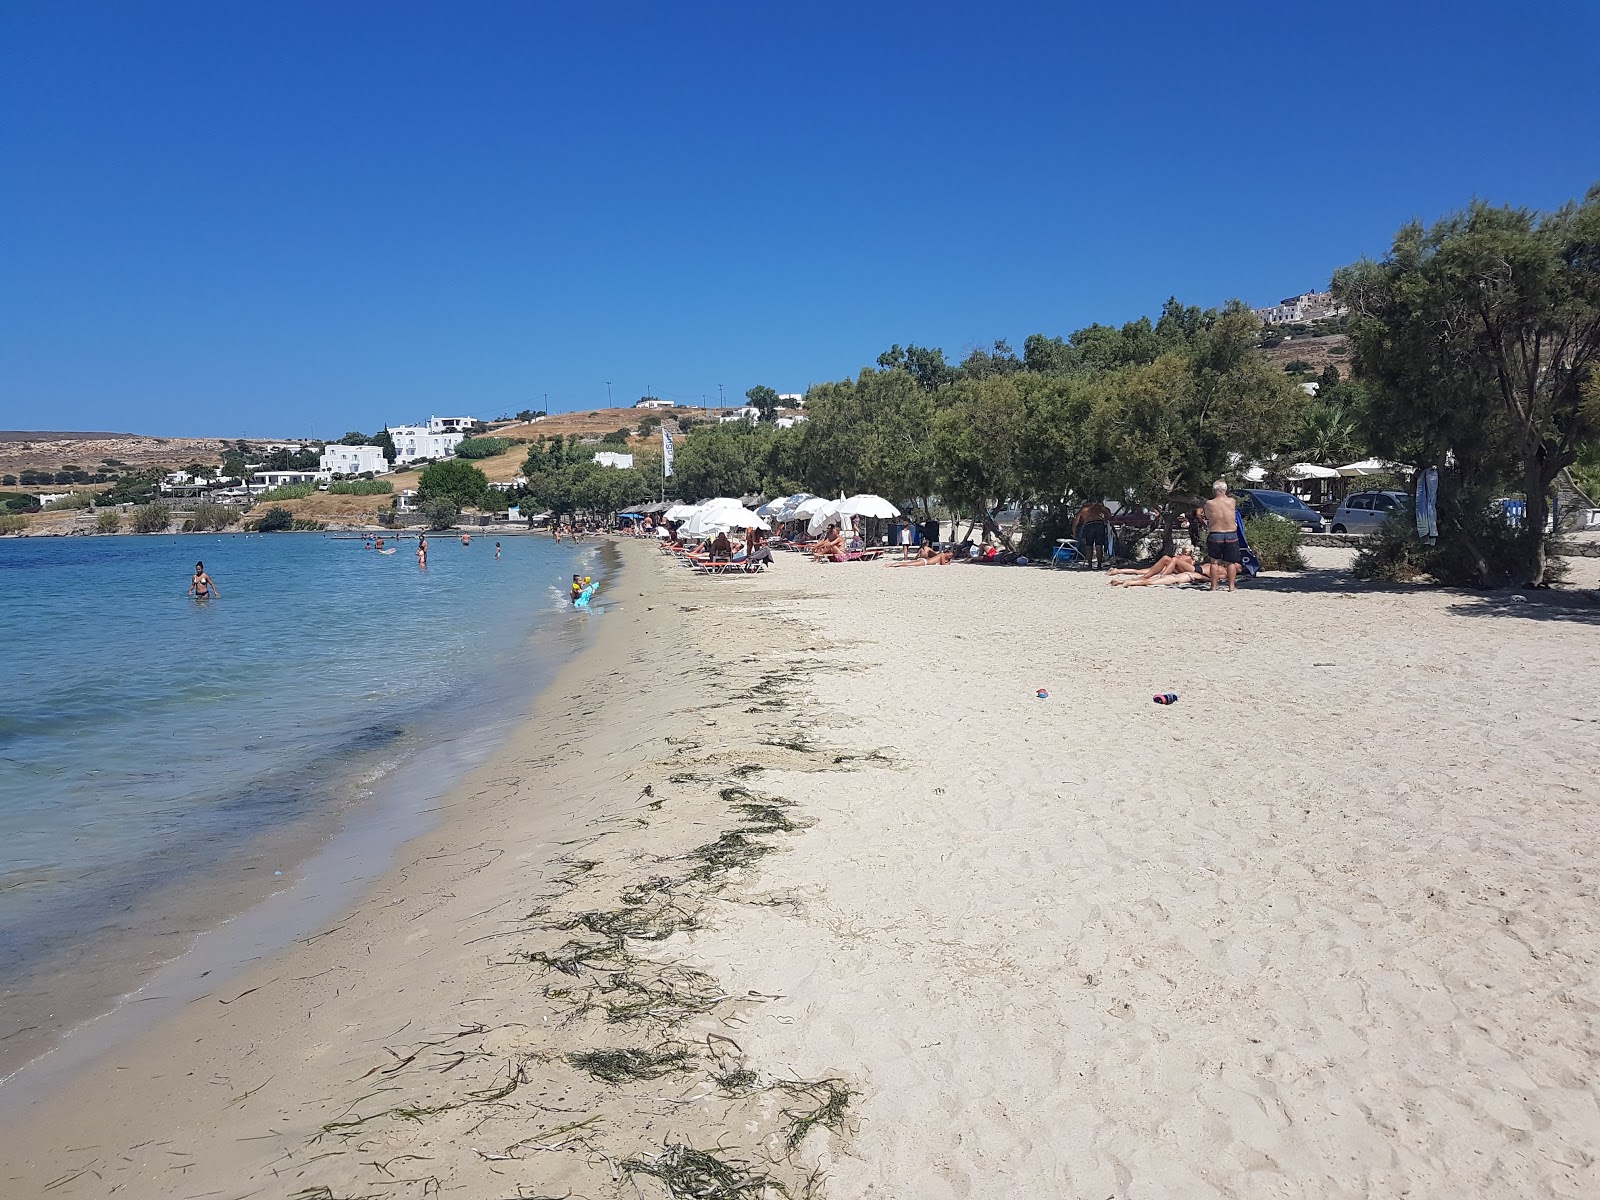 Livadia beach'in fotoğrafı geniş plaj ile birlikte